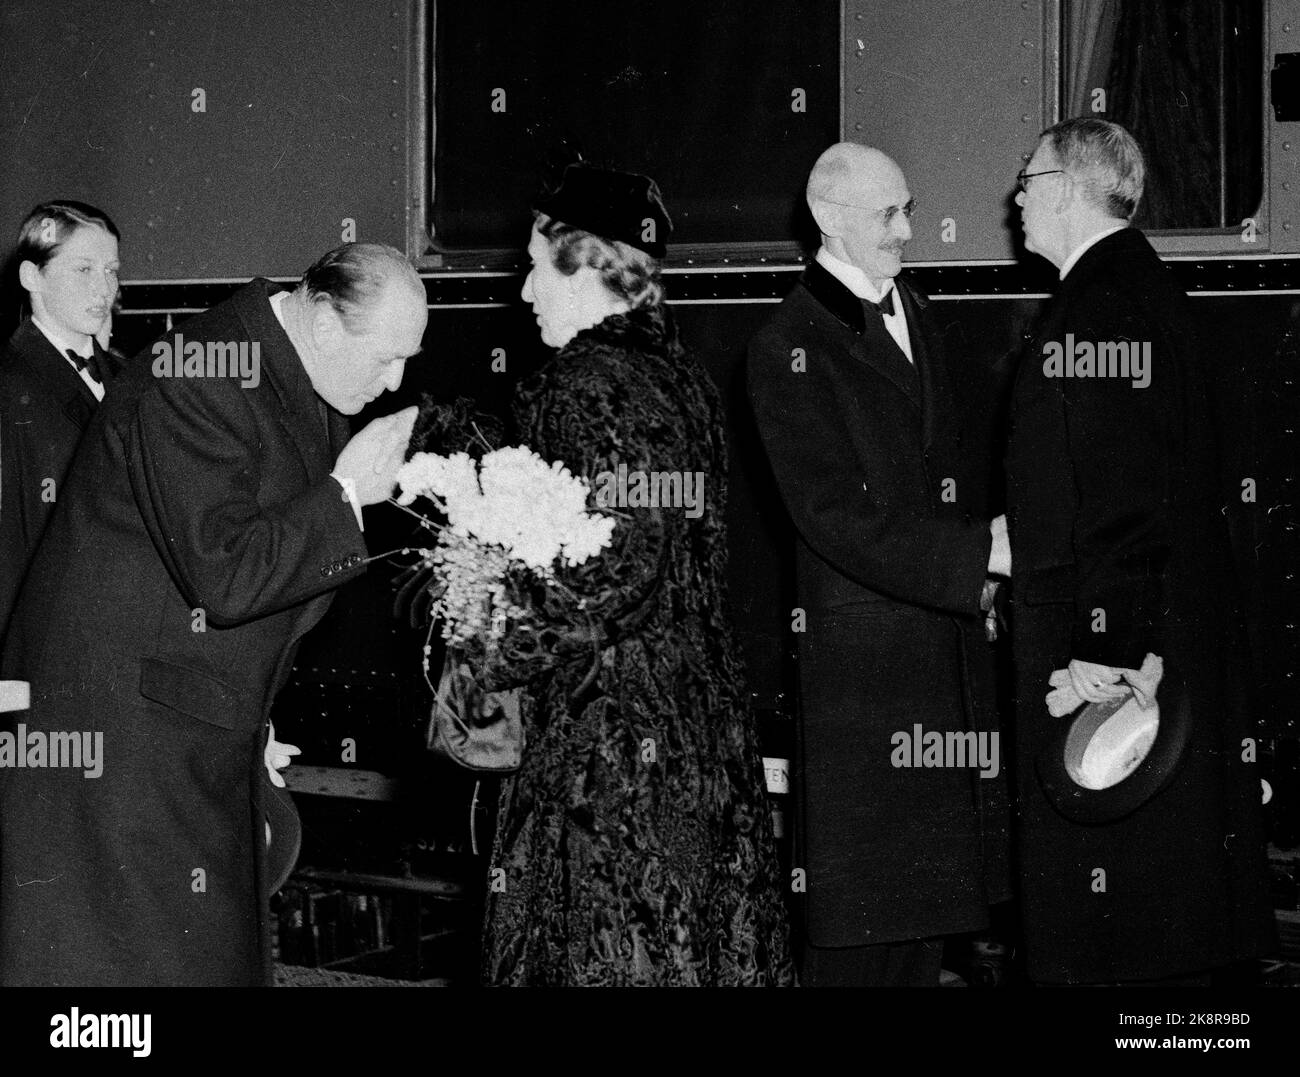 Oslo 1952. König Gustaf Adolf und Königin Louise von Schweden verlassen Norwegen nach drei Tagen offiziellem Besuch. Hier sehen wir Prinz Harald ( NTB Archiv neg. 12960J / NTB Stockfoto